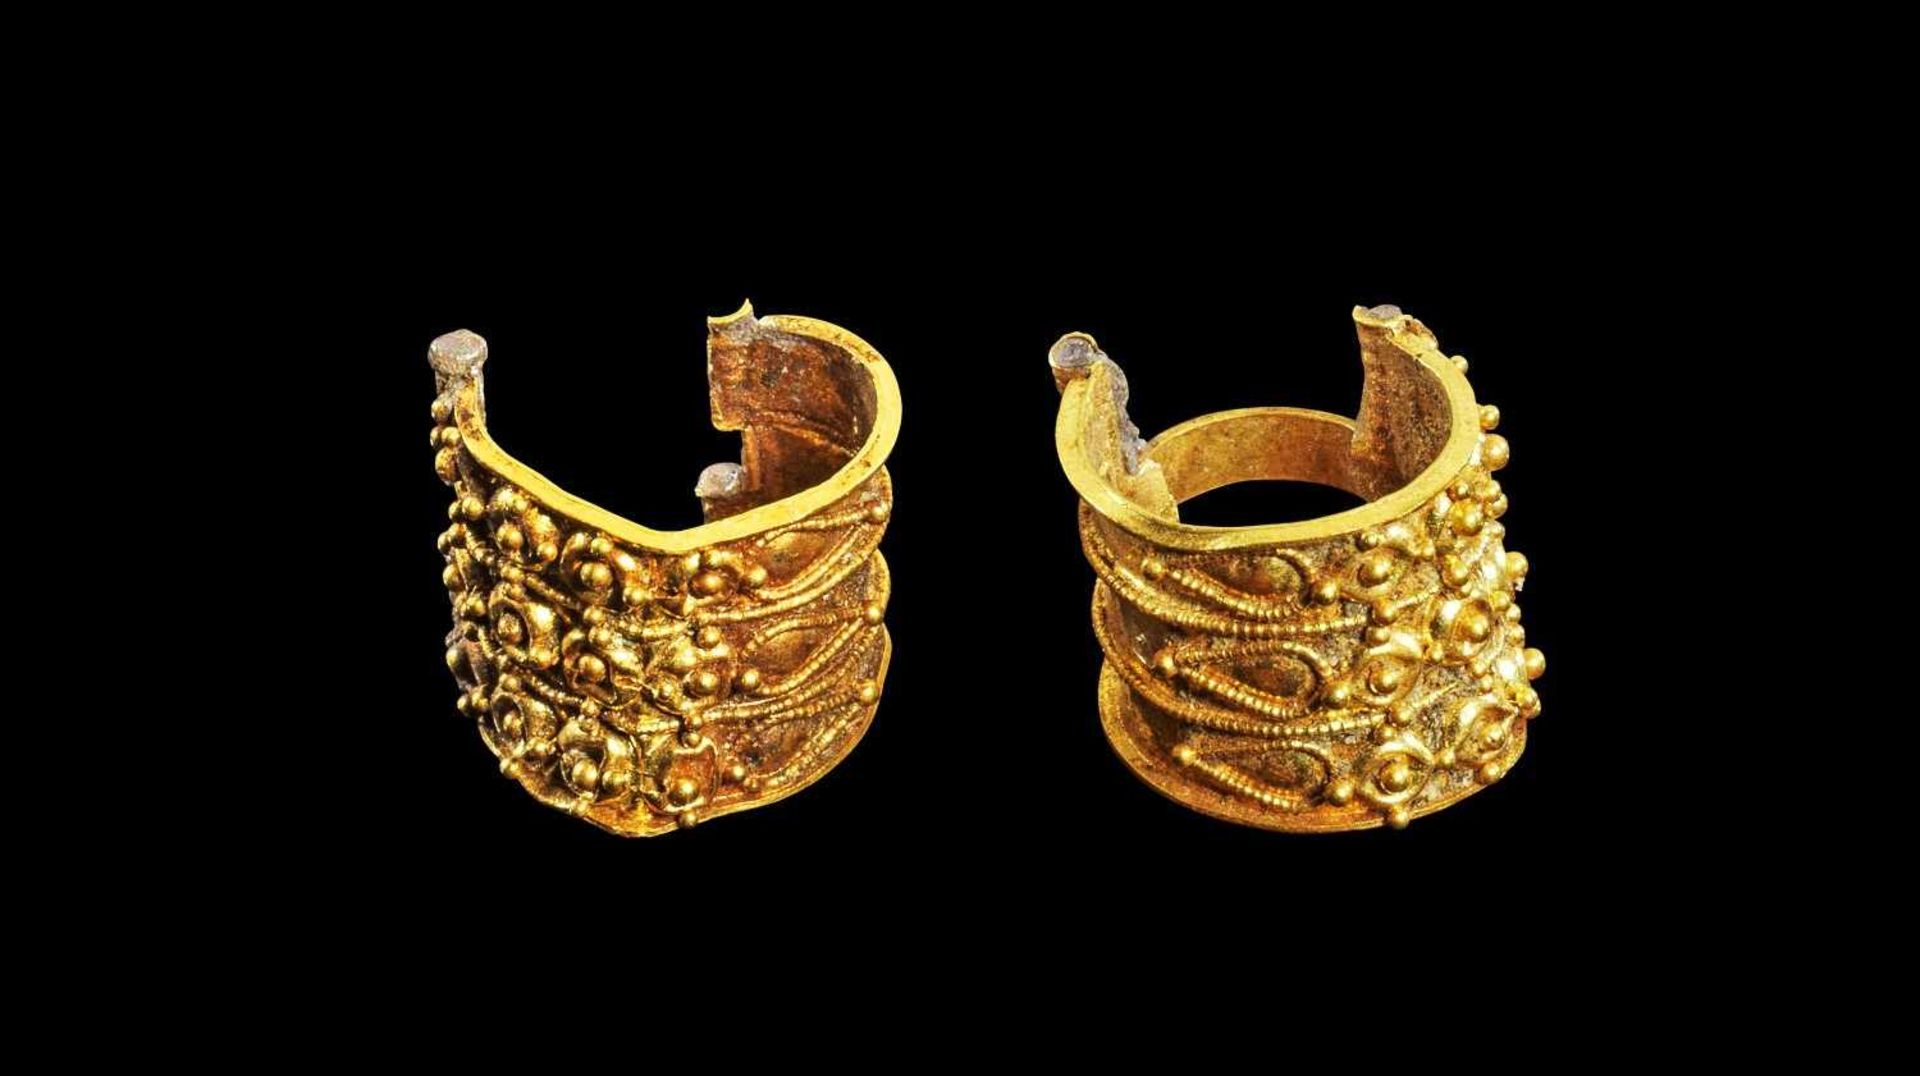 Paar goldene Körbchenohrringe. Etruskisch, 7. Jh. - 5. Jh. v. Chr. 1,27g, ø 1cm. Typ 'Bauletto'. Ein